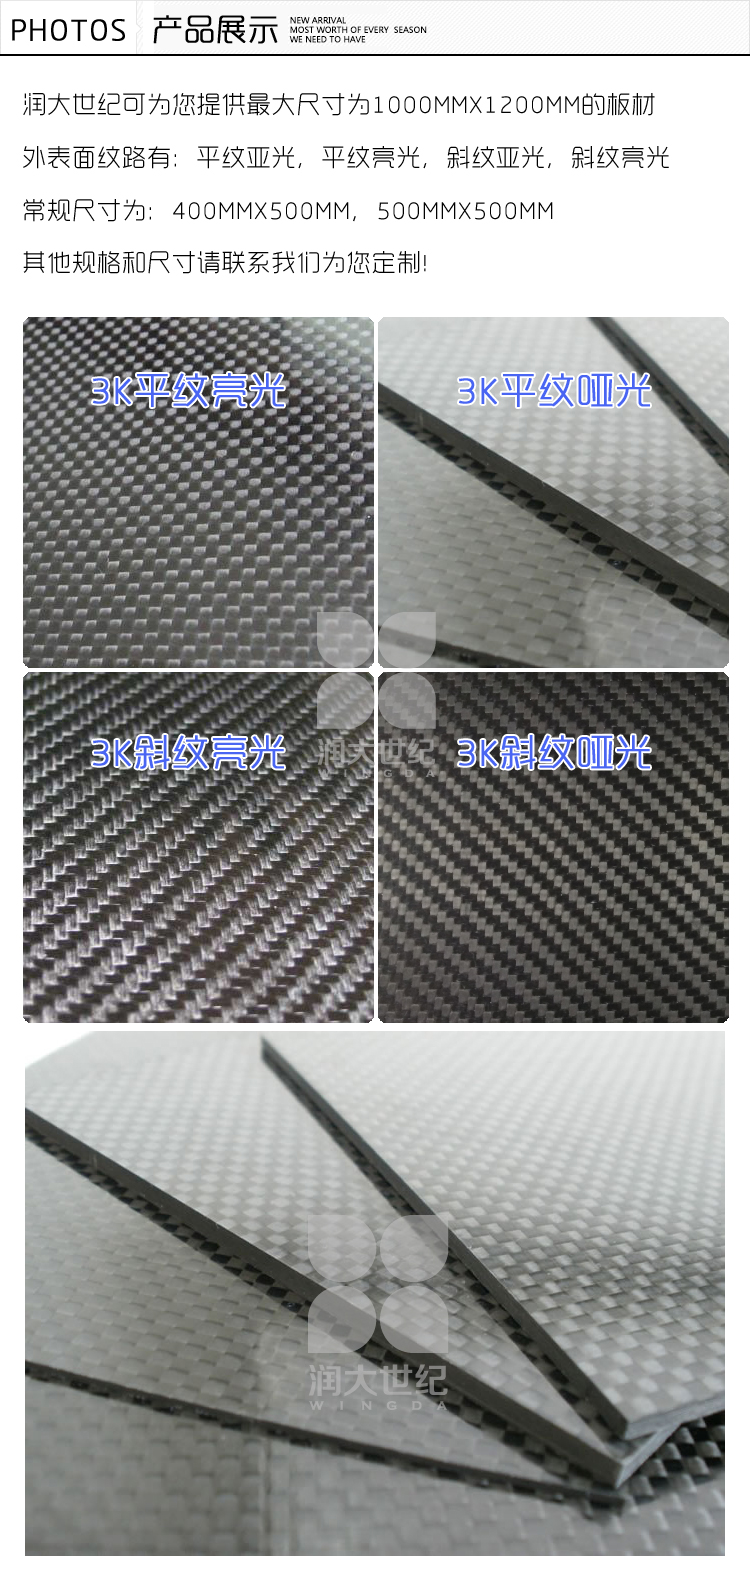 2mm斜纹亮光碳纤维板，碳素纤维板材，碳纤维片产品展示,碳纤维板,碳素纤维板,碳纤维板材